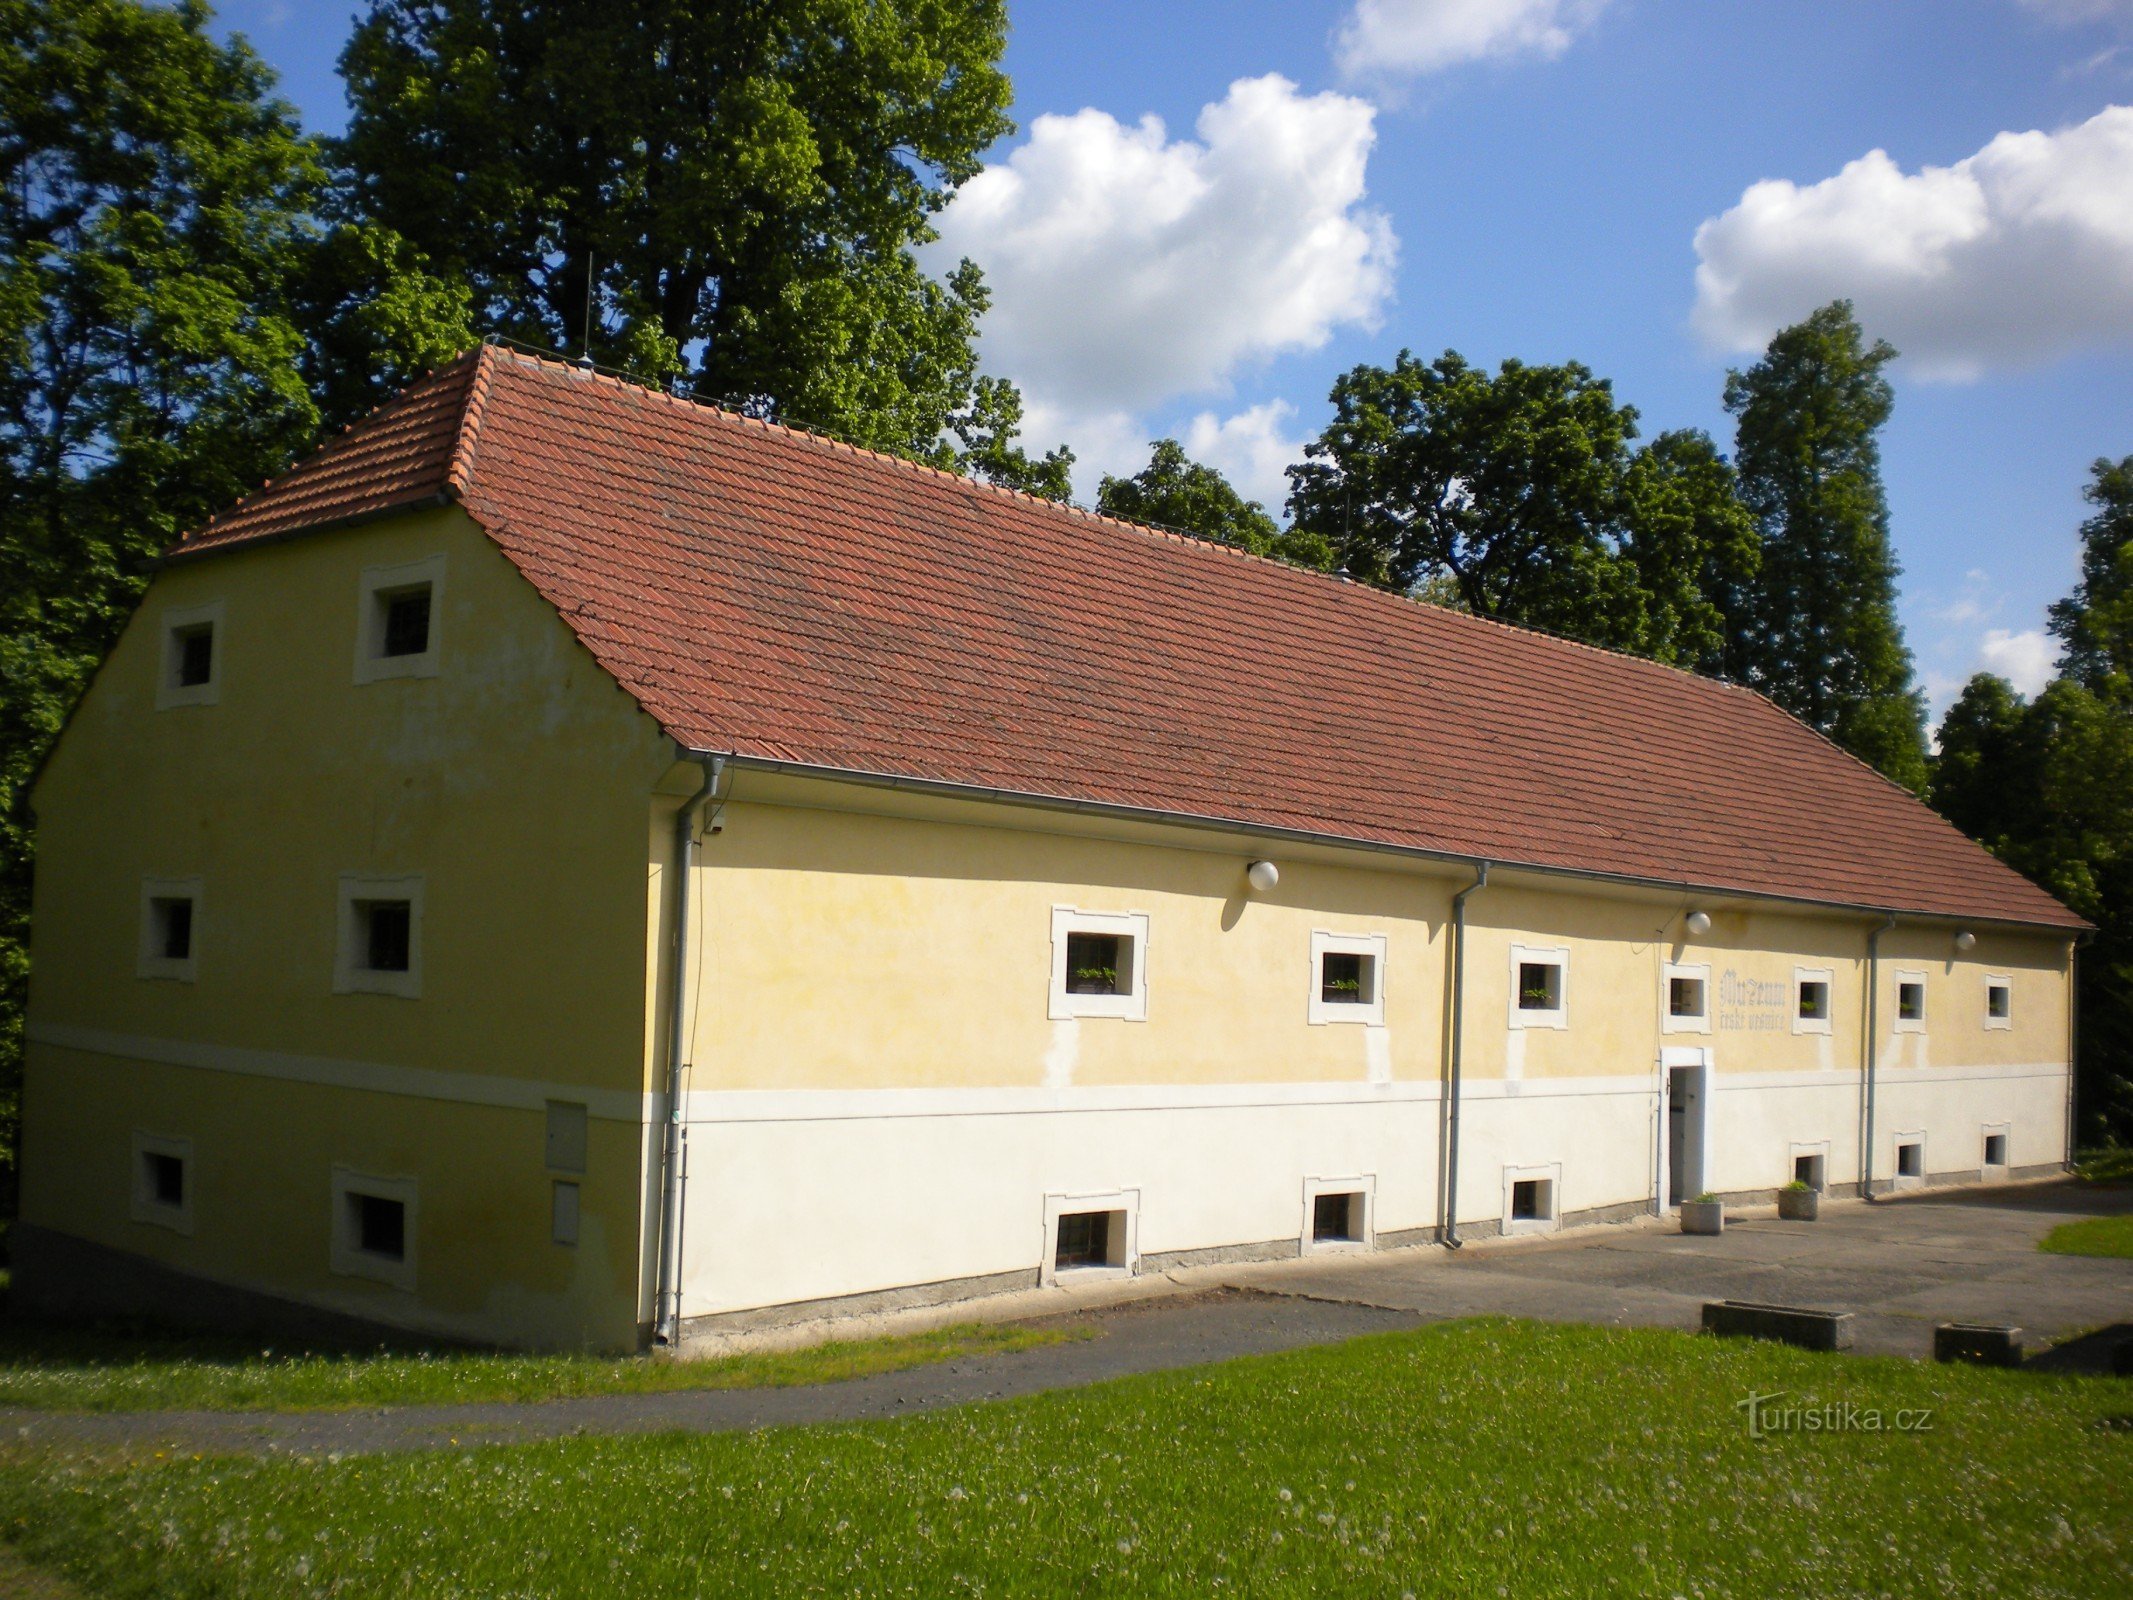 Μουσείο του Τσεχικού Χωριού